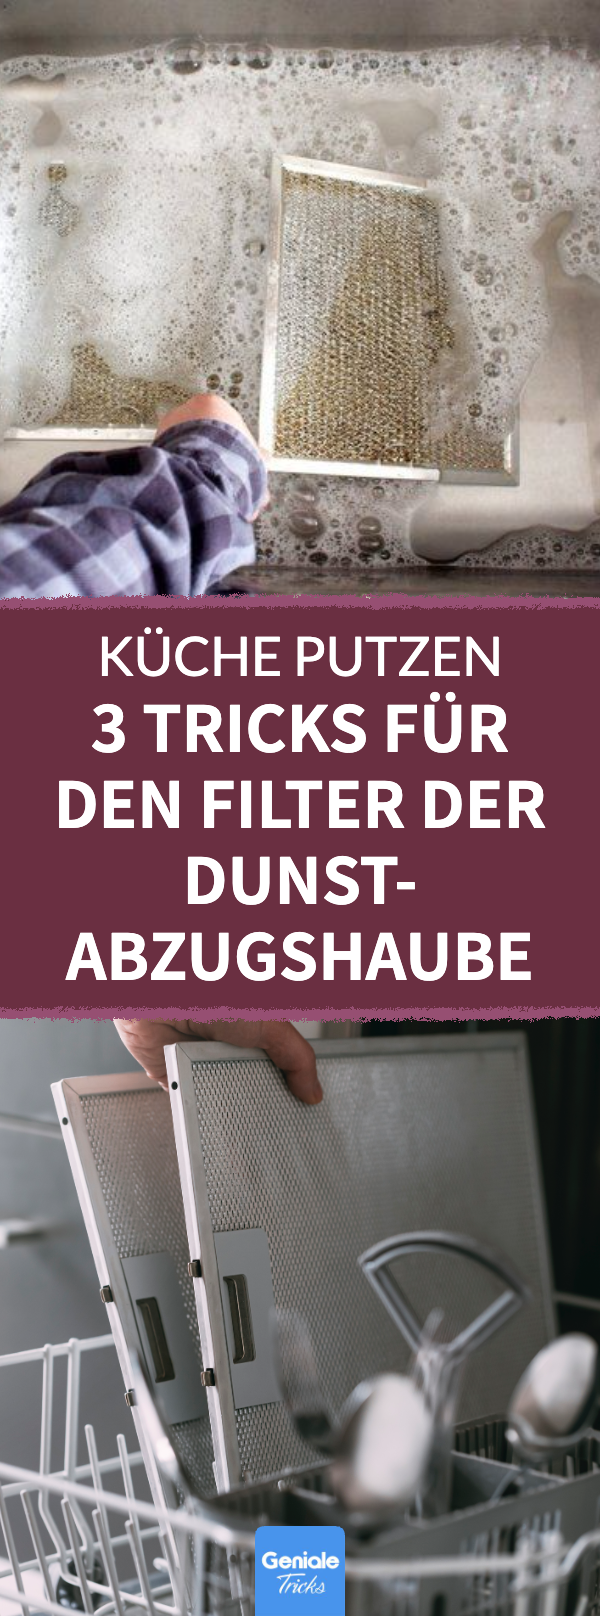 Küche putzen: 3 Tricks für den Filter der Dunstabzugshaube